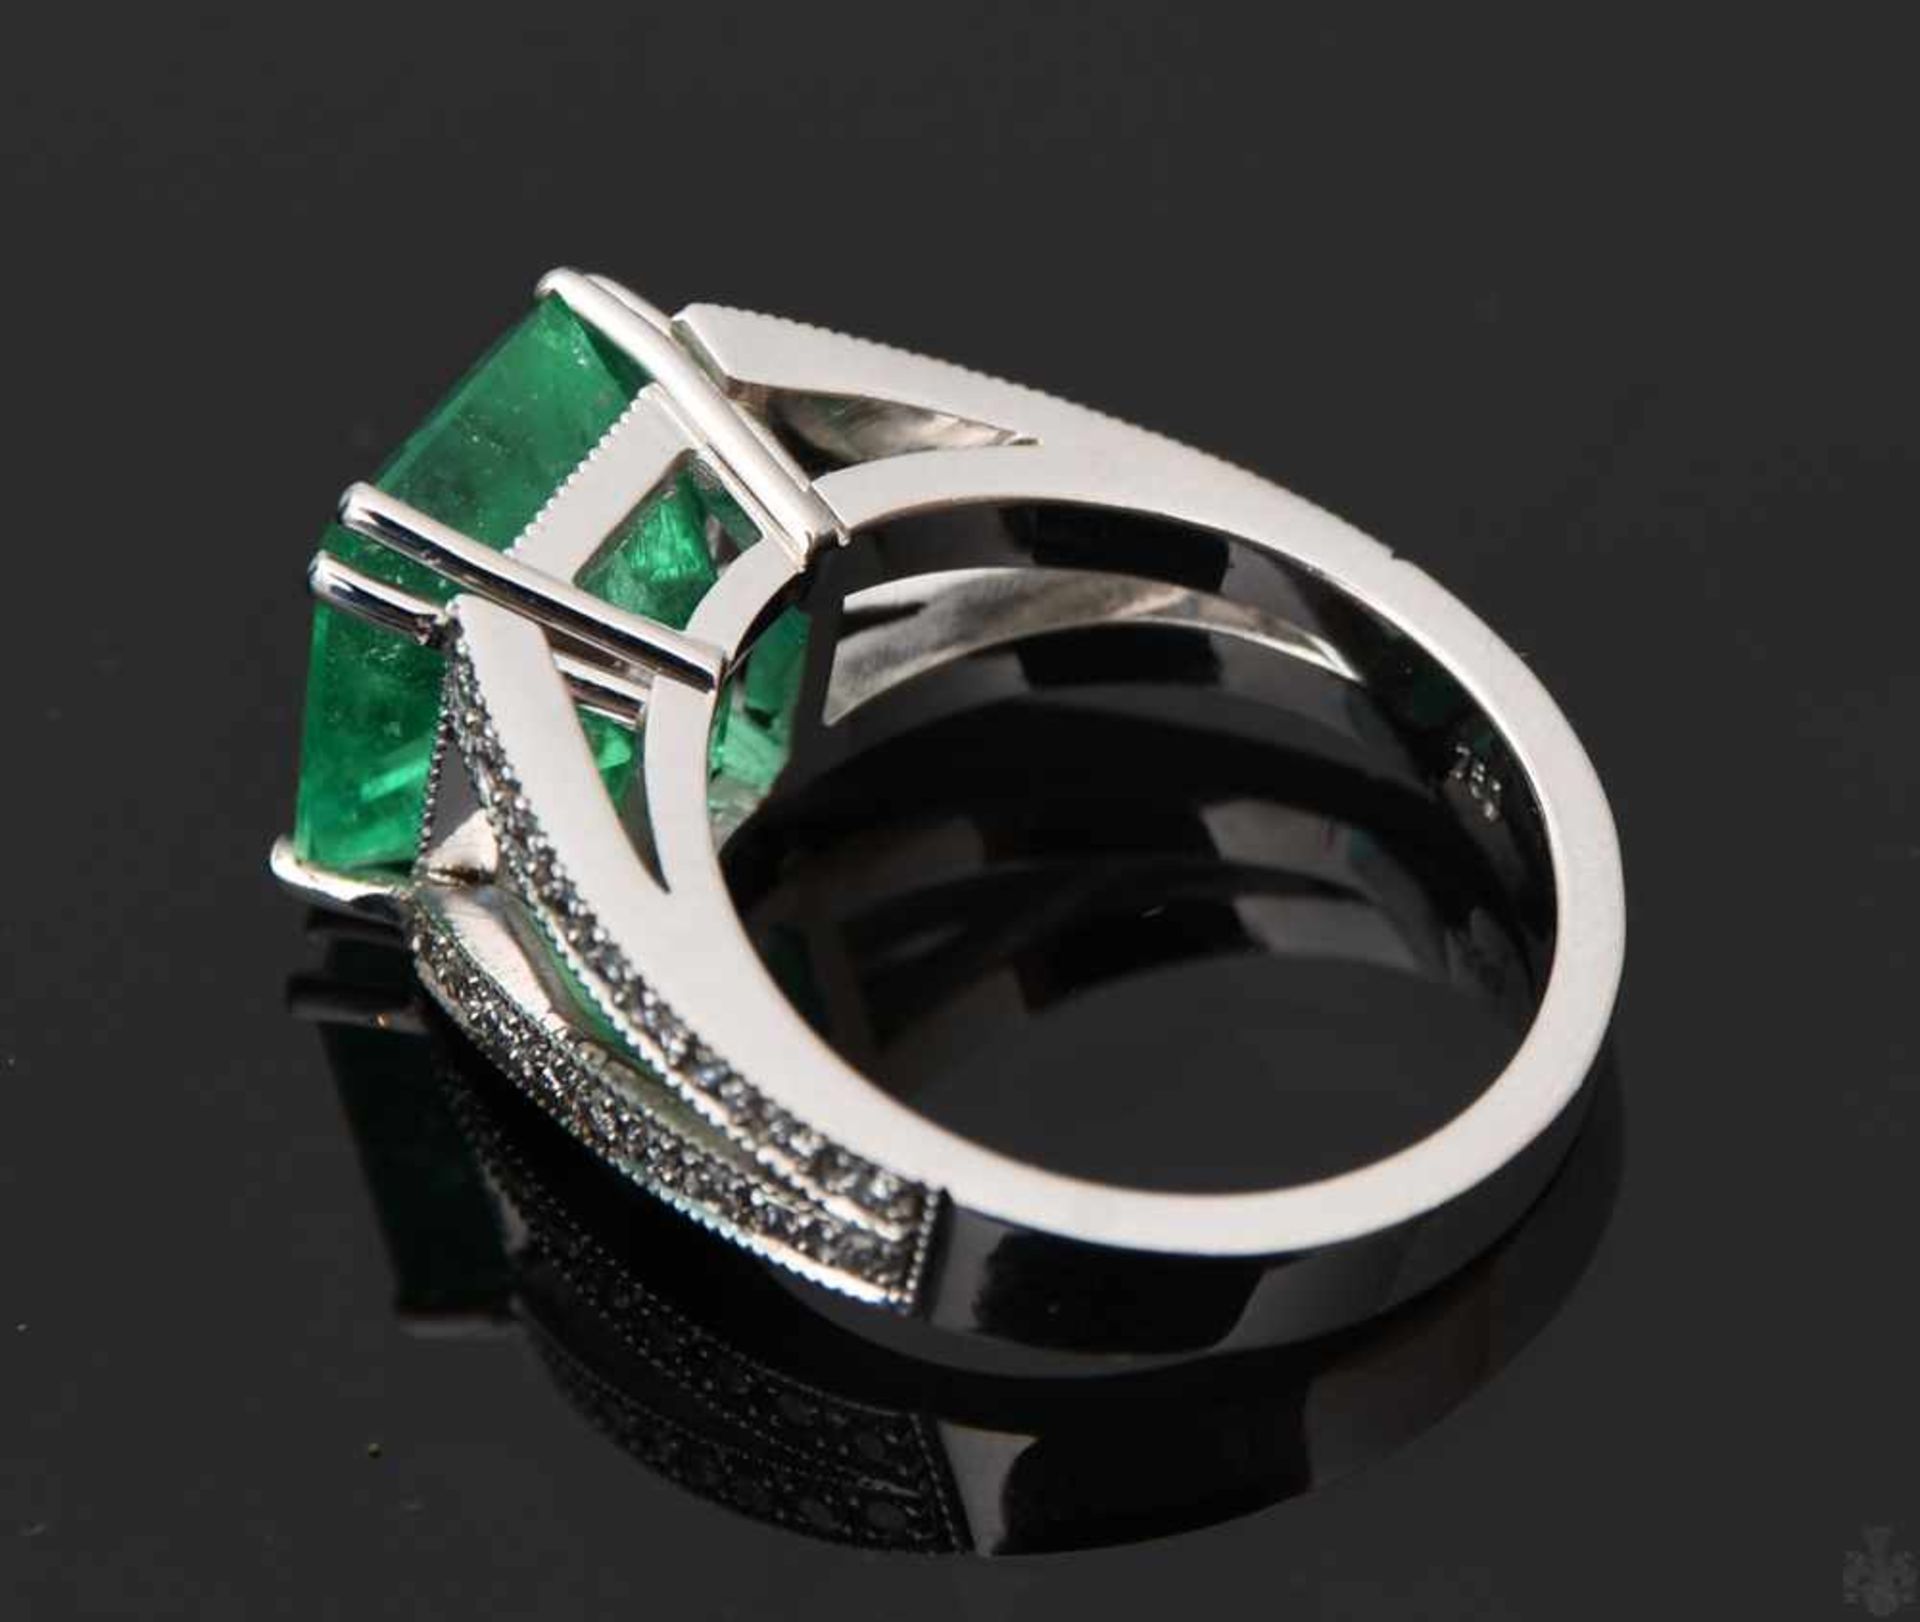 RING MIT SMARAGD UND BRILLIANTEN.Ring mit Smaragd und Brillianten, WG 750/000. 36 Brillianten zus. - Bild 4 aus 16